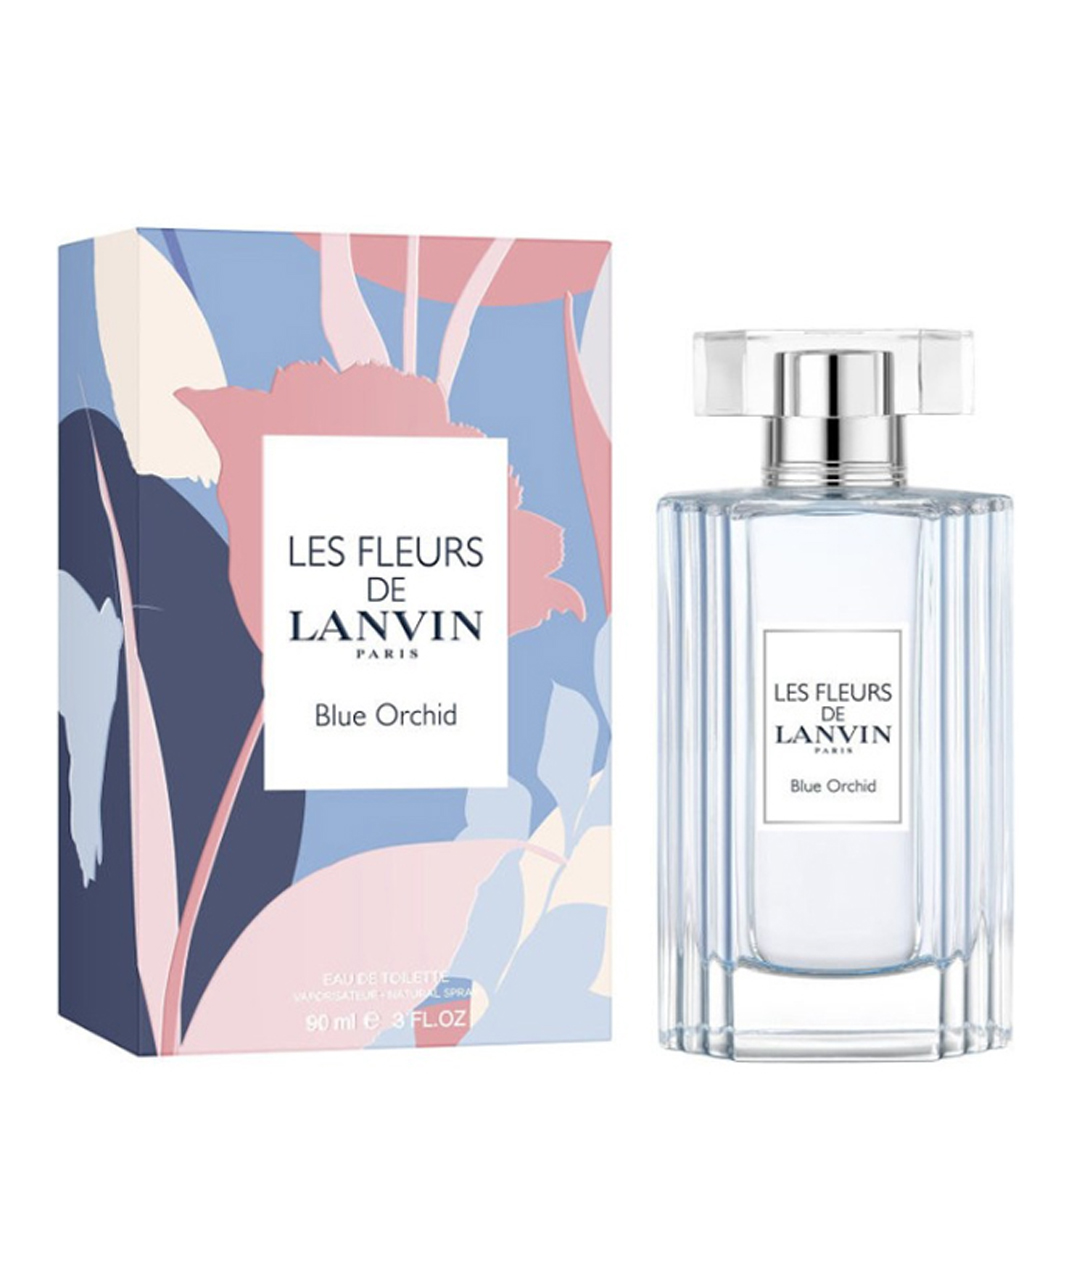 Perfume «Lanvin» Les Fleurs De Blue Orchid, for women, 90 ml